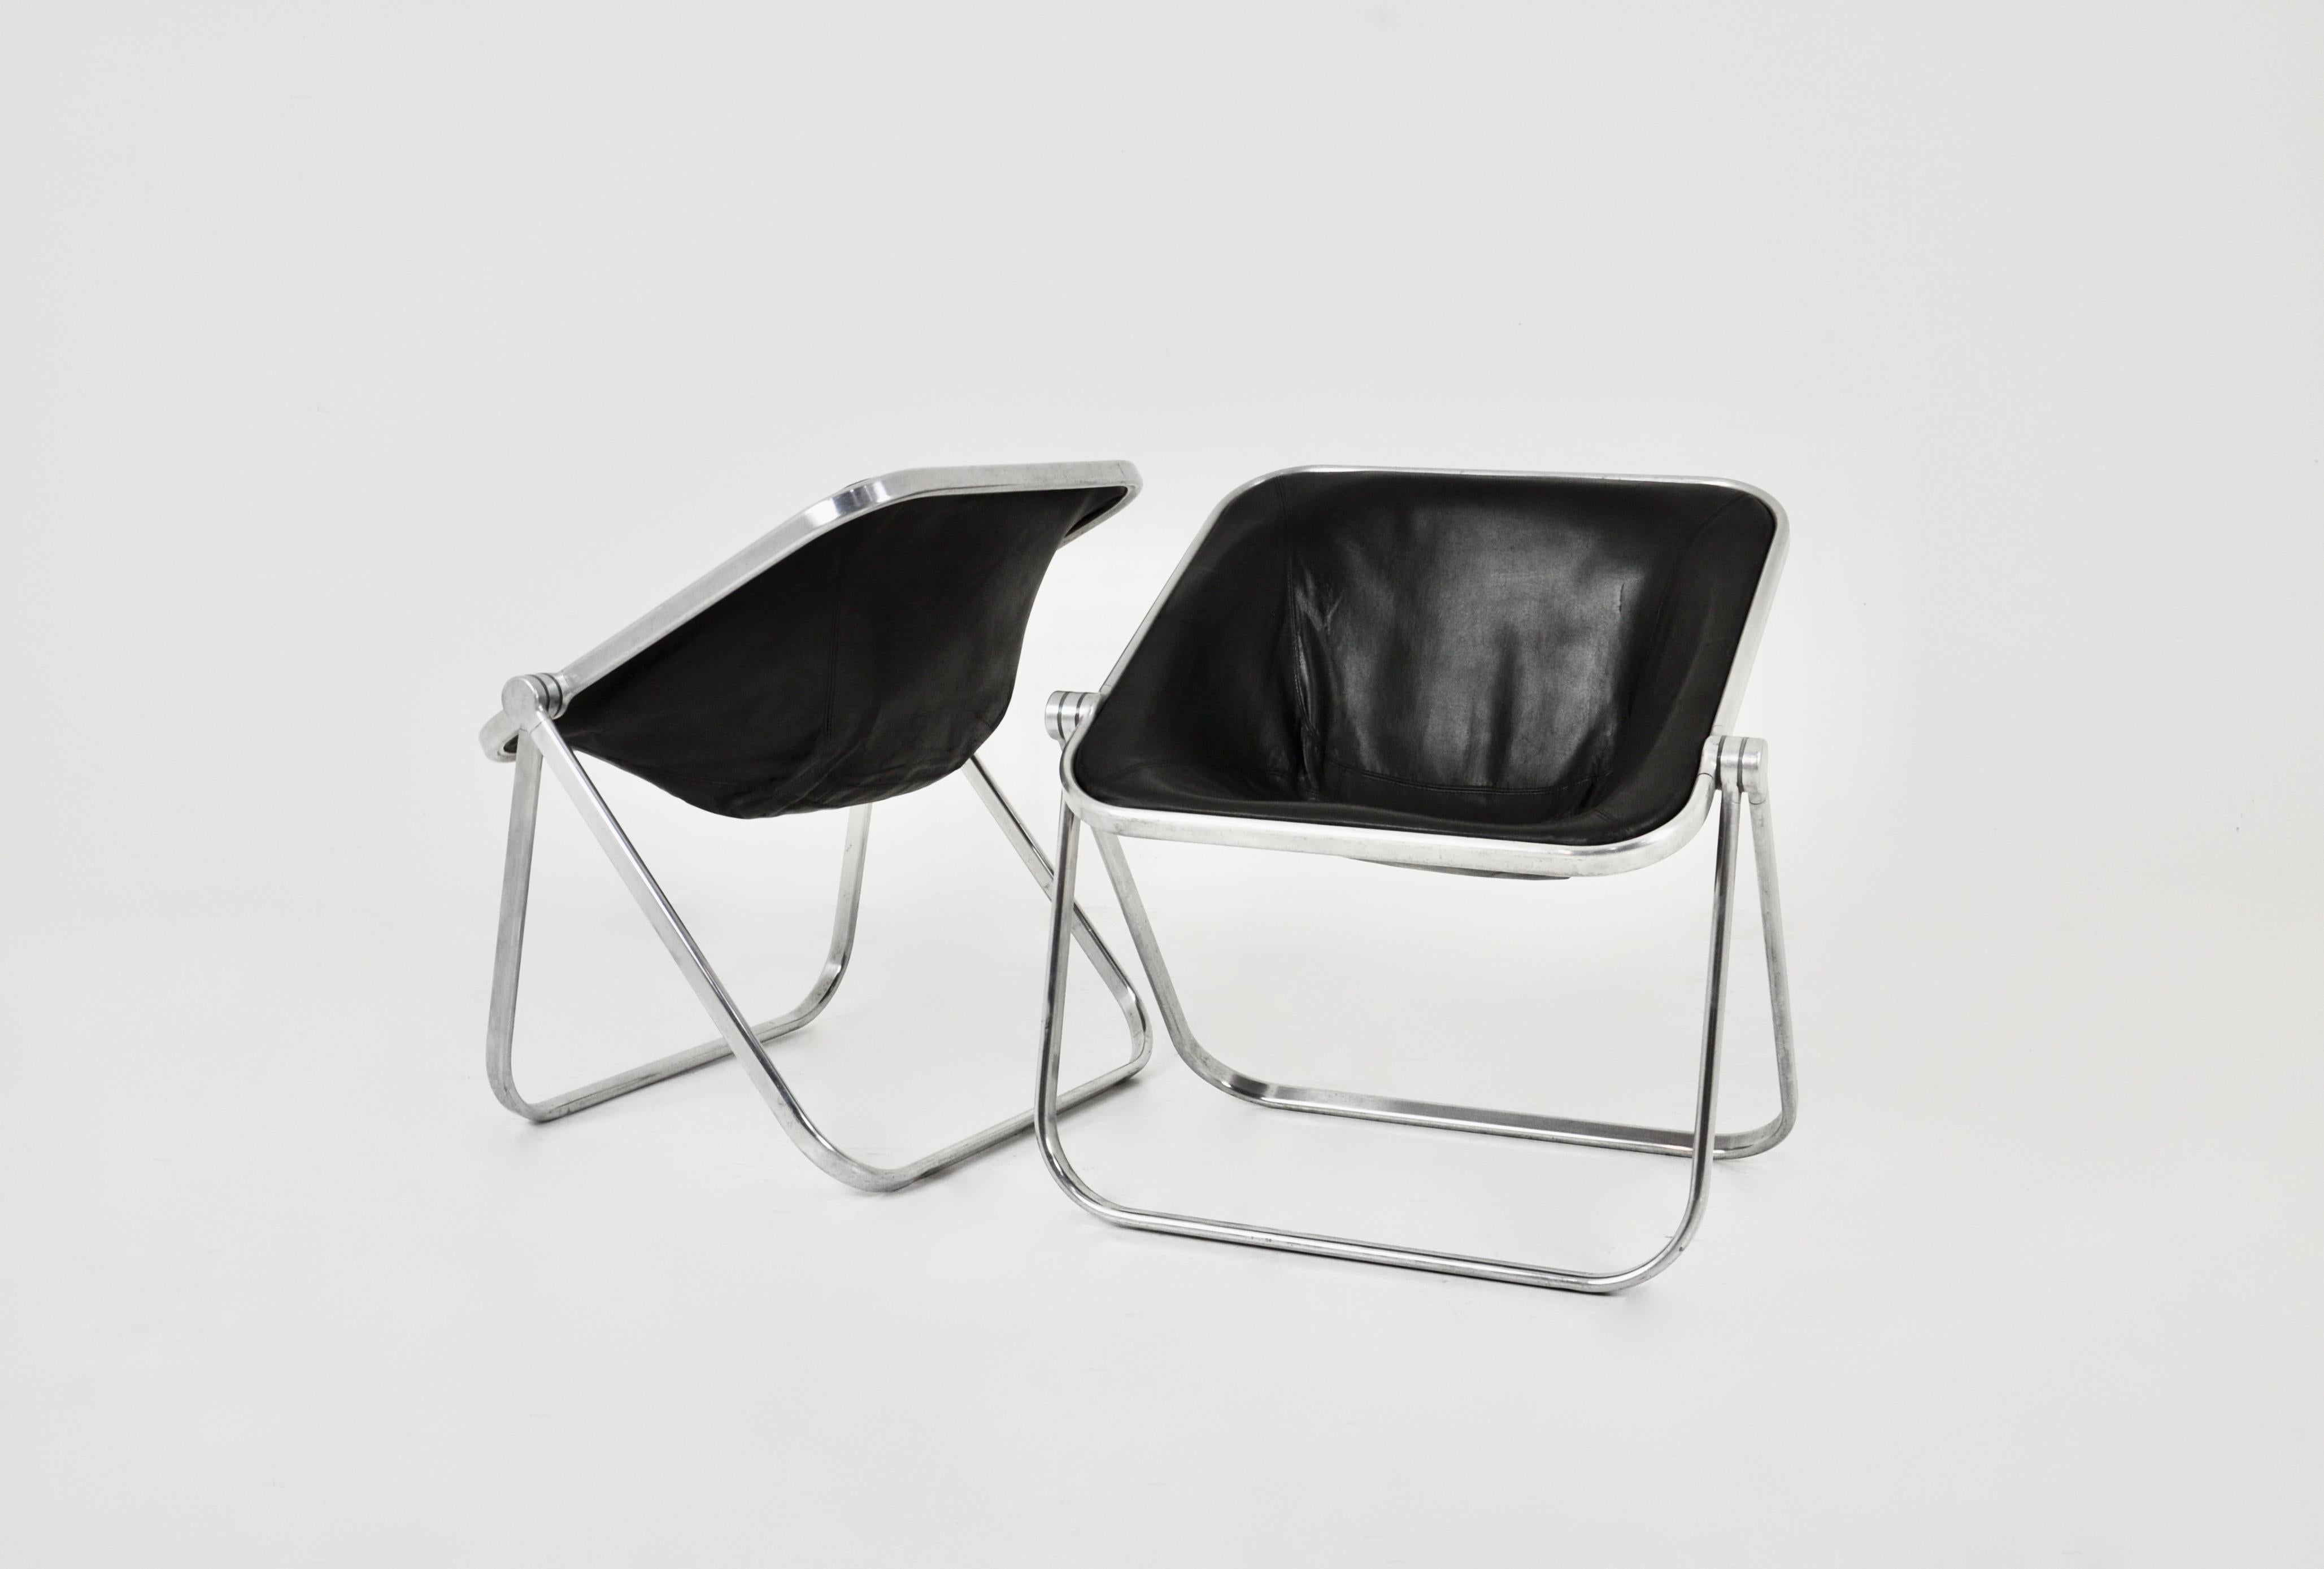 Paar Sessel aus Leder und Metall in schwarzer Farbe. Abnutzung auf der Rückseite eines der Sessel (siehe Foto) Sitzhöhe: 44cm.